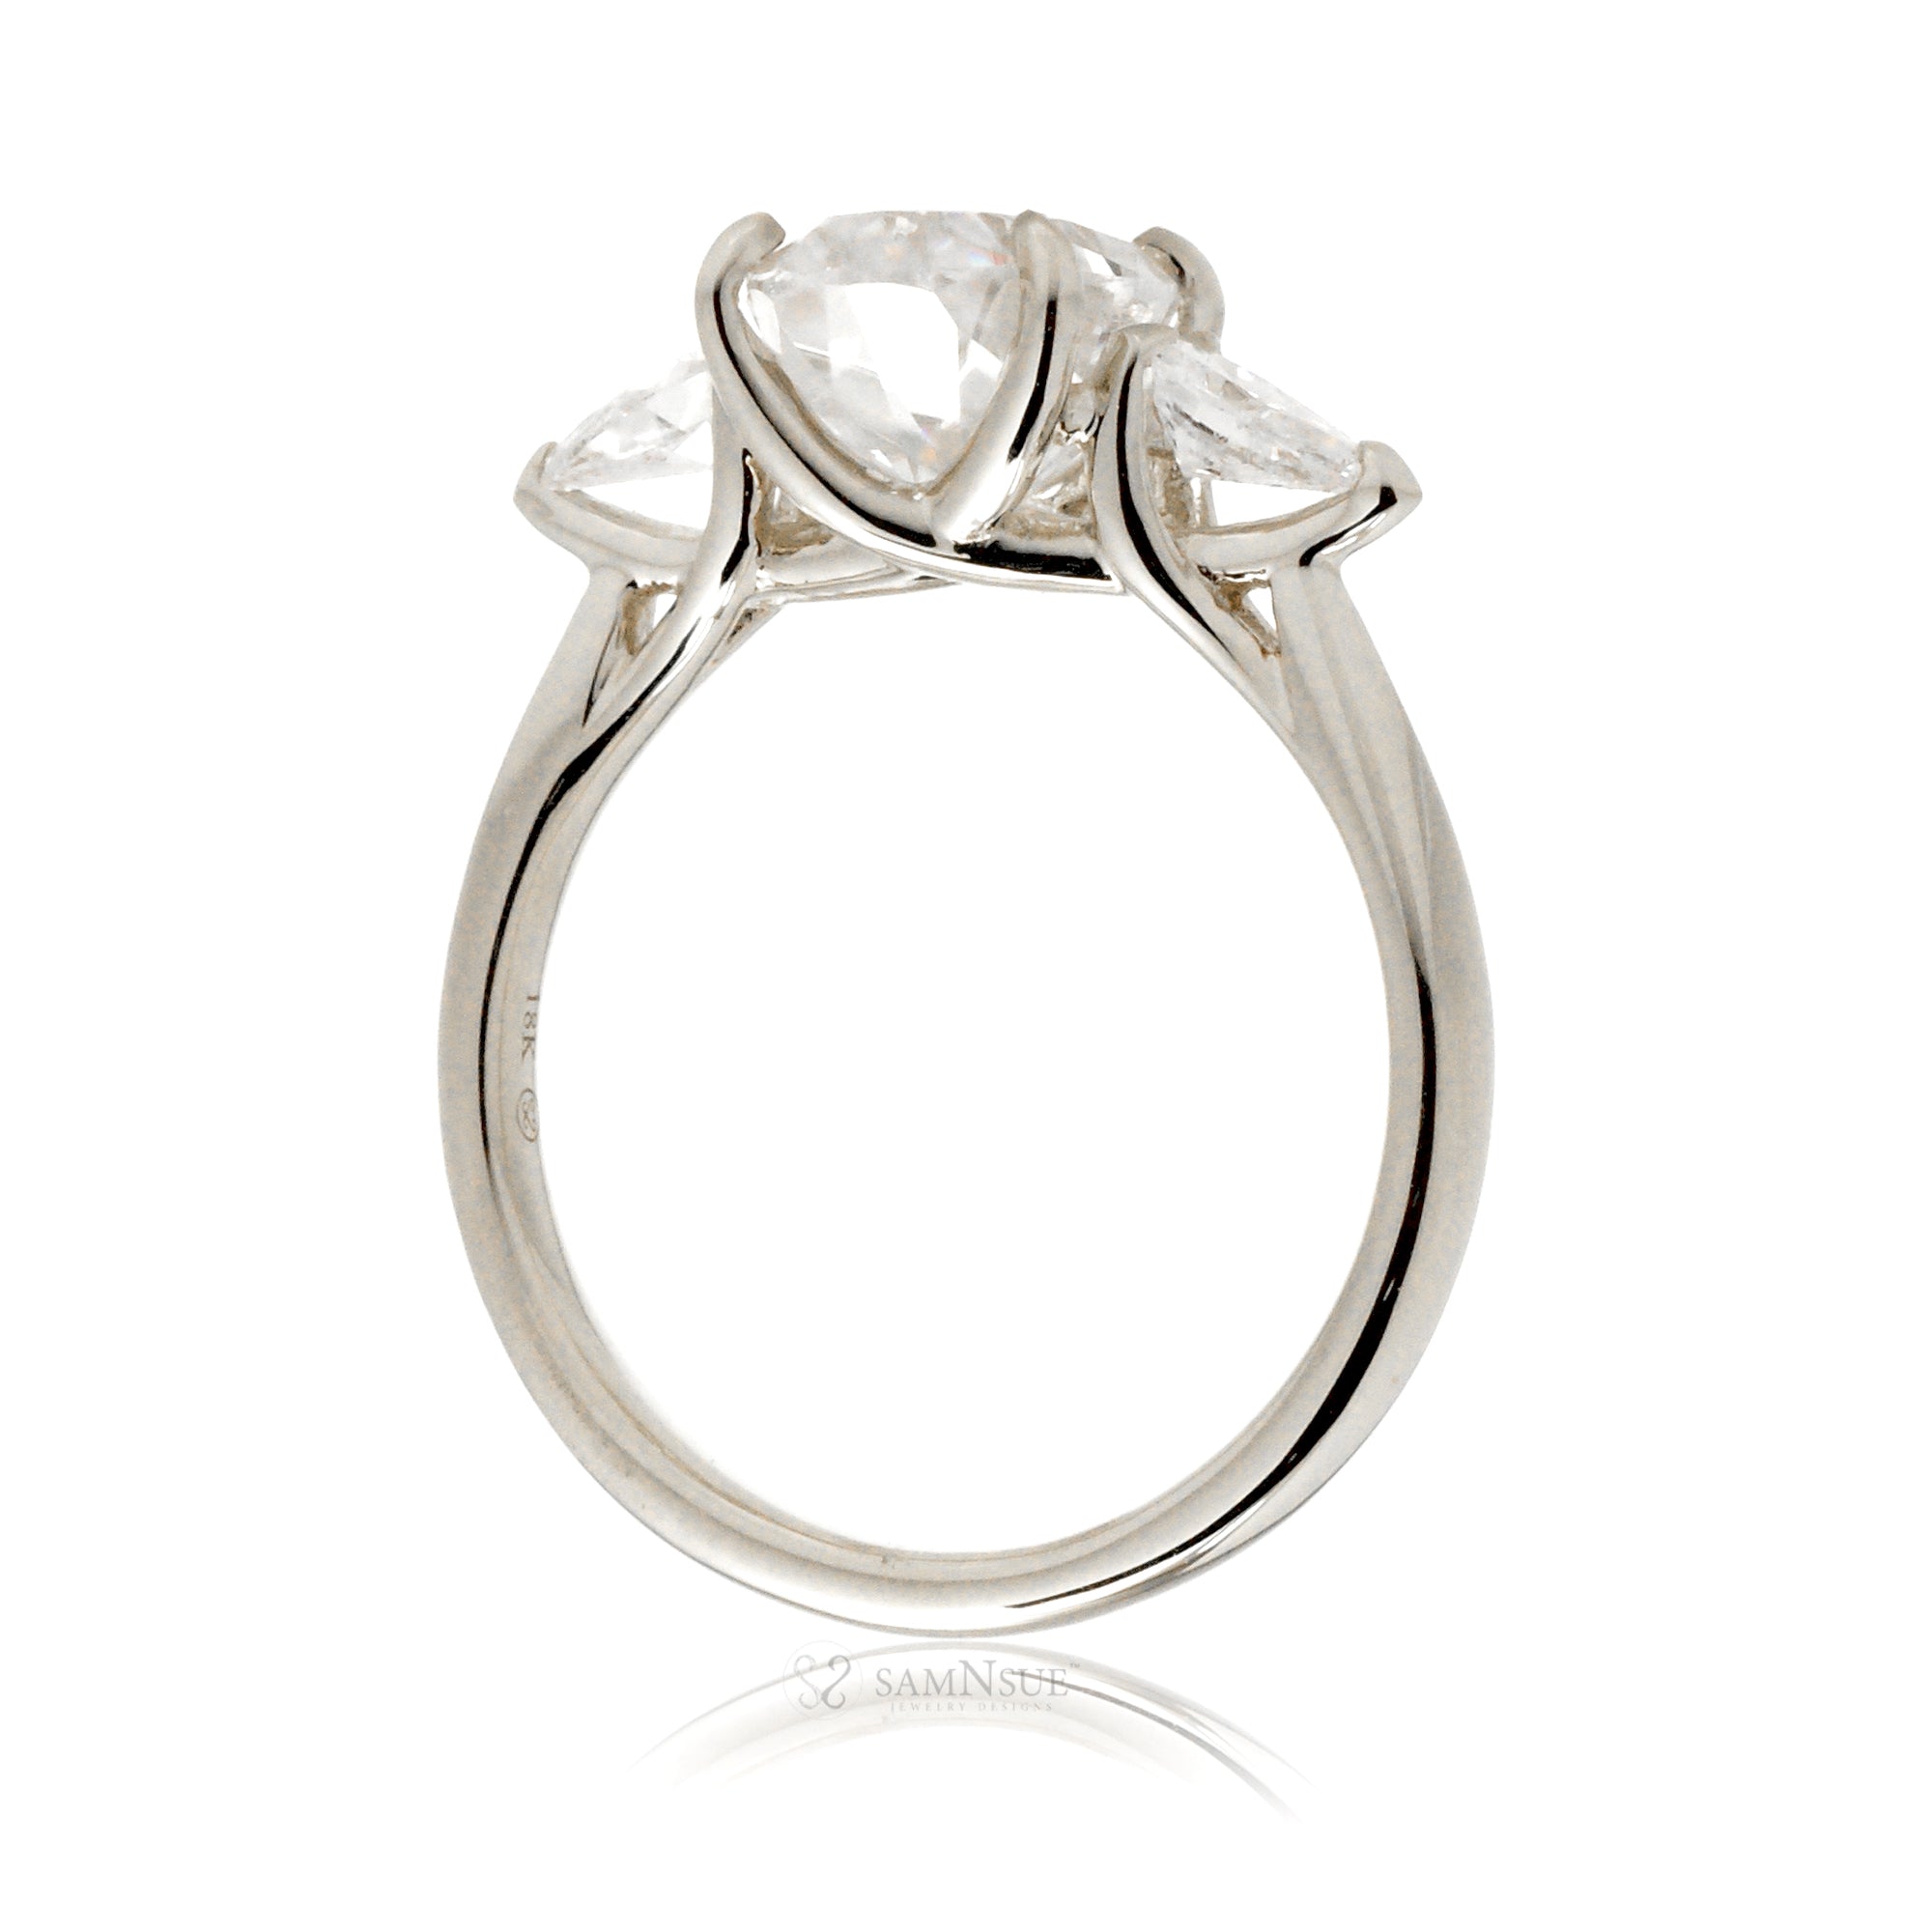 The Iris Oval Diamond Ring (Lab-grown)